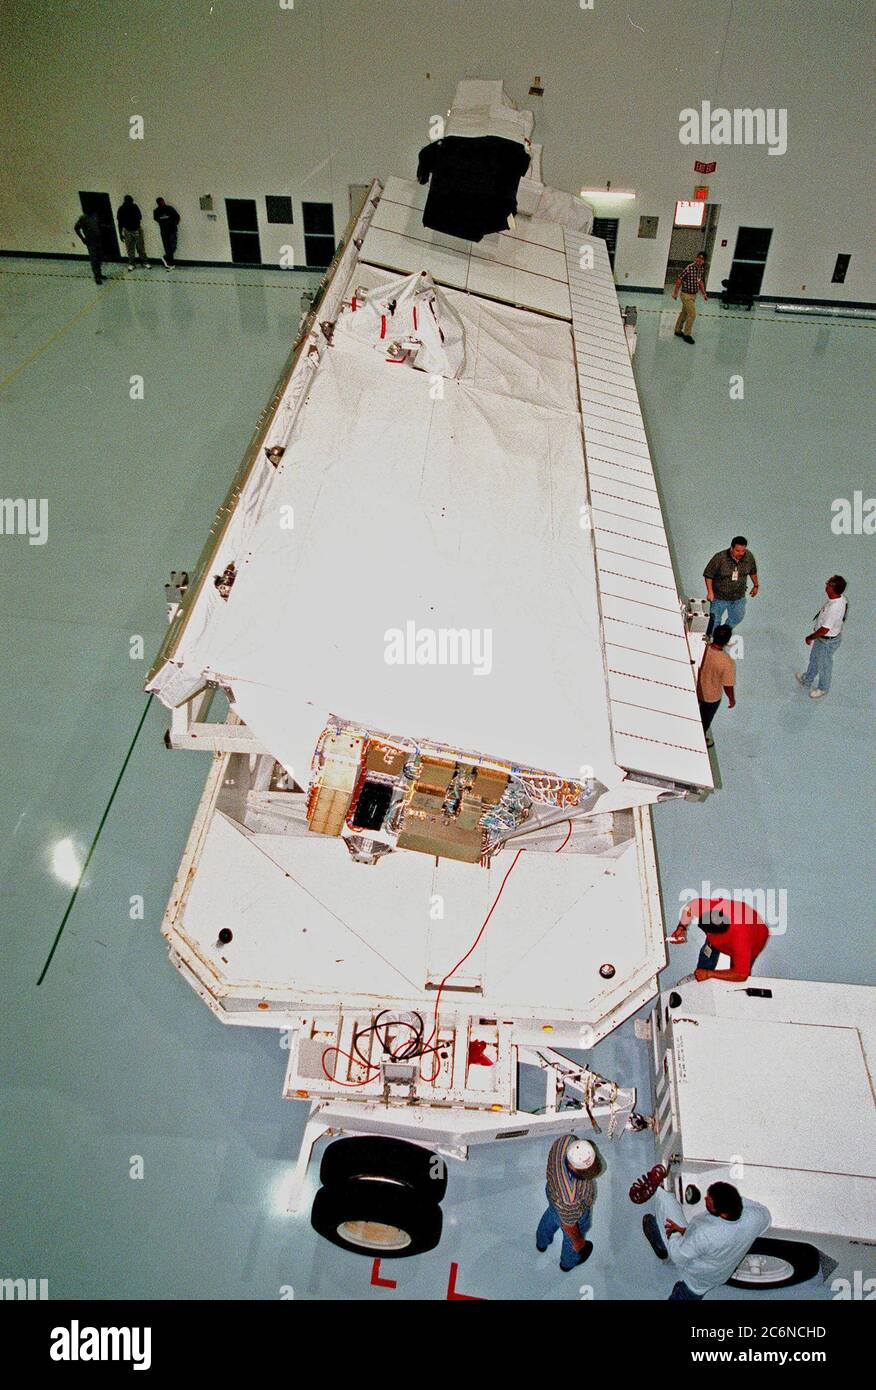 In der Raumstation Processing Facility (SSPF) trennen Arbeiter (unten rechts) das Transportfahrzeug von der Shuttle Radar Topography Mission (SRTM), nachdem sie es für die Vorbereitungen vor dem Start in das Gebäude gebracht haben. Stockfoto